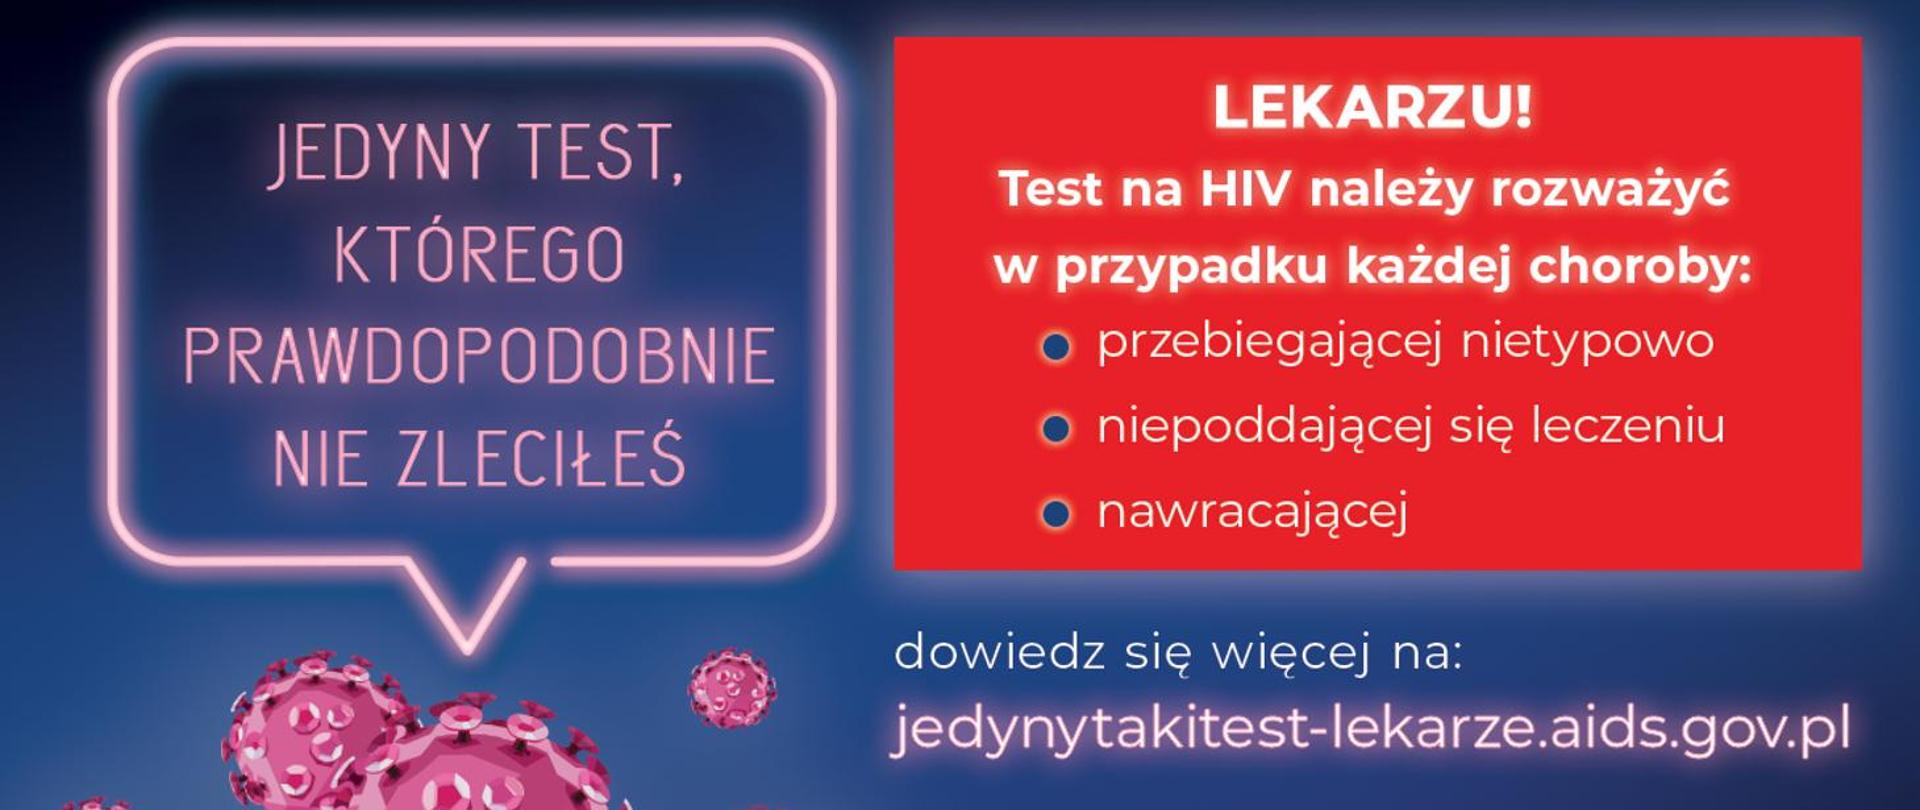 Kampania Krajowego Centrum ds. AIDS skierowana do środowiska medycznego „Jedyny test, którego prawdopodobnie nie zleciłeś” prowadzona w ramach działań informacyjno-edukacyjnych pn. „Jedyny taki test”